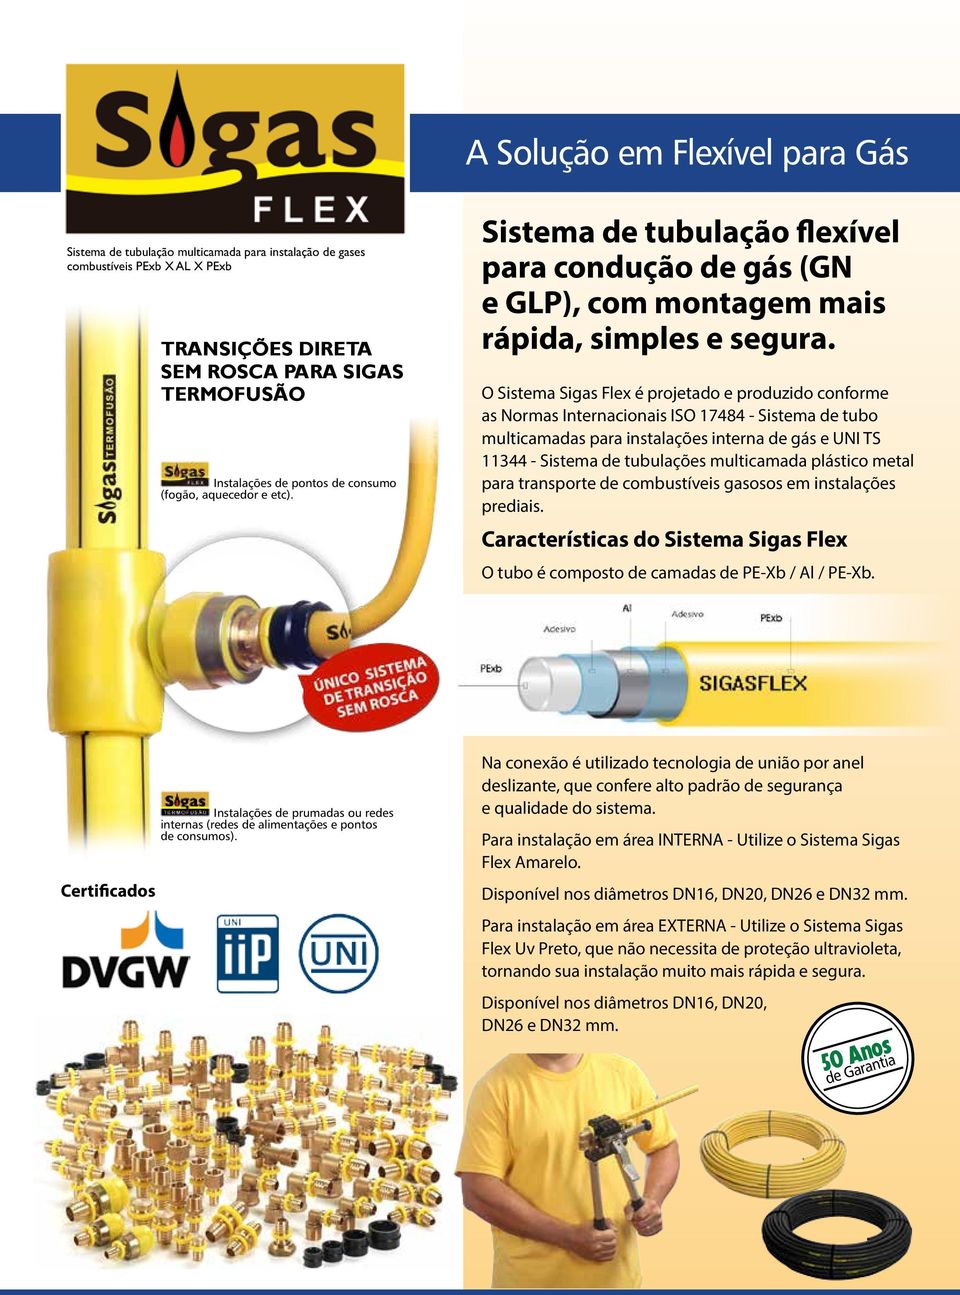 O Sistema Sigas Flex é projetado e produzido conforme as Normas Internacionais ISO 17484 - Sistema de tubo multicamadas para instalações interna de gás e UNI TS 11344 - Sistema de tubulações